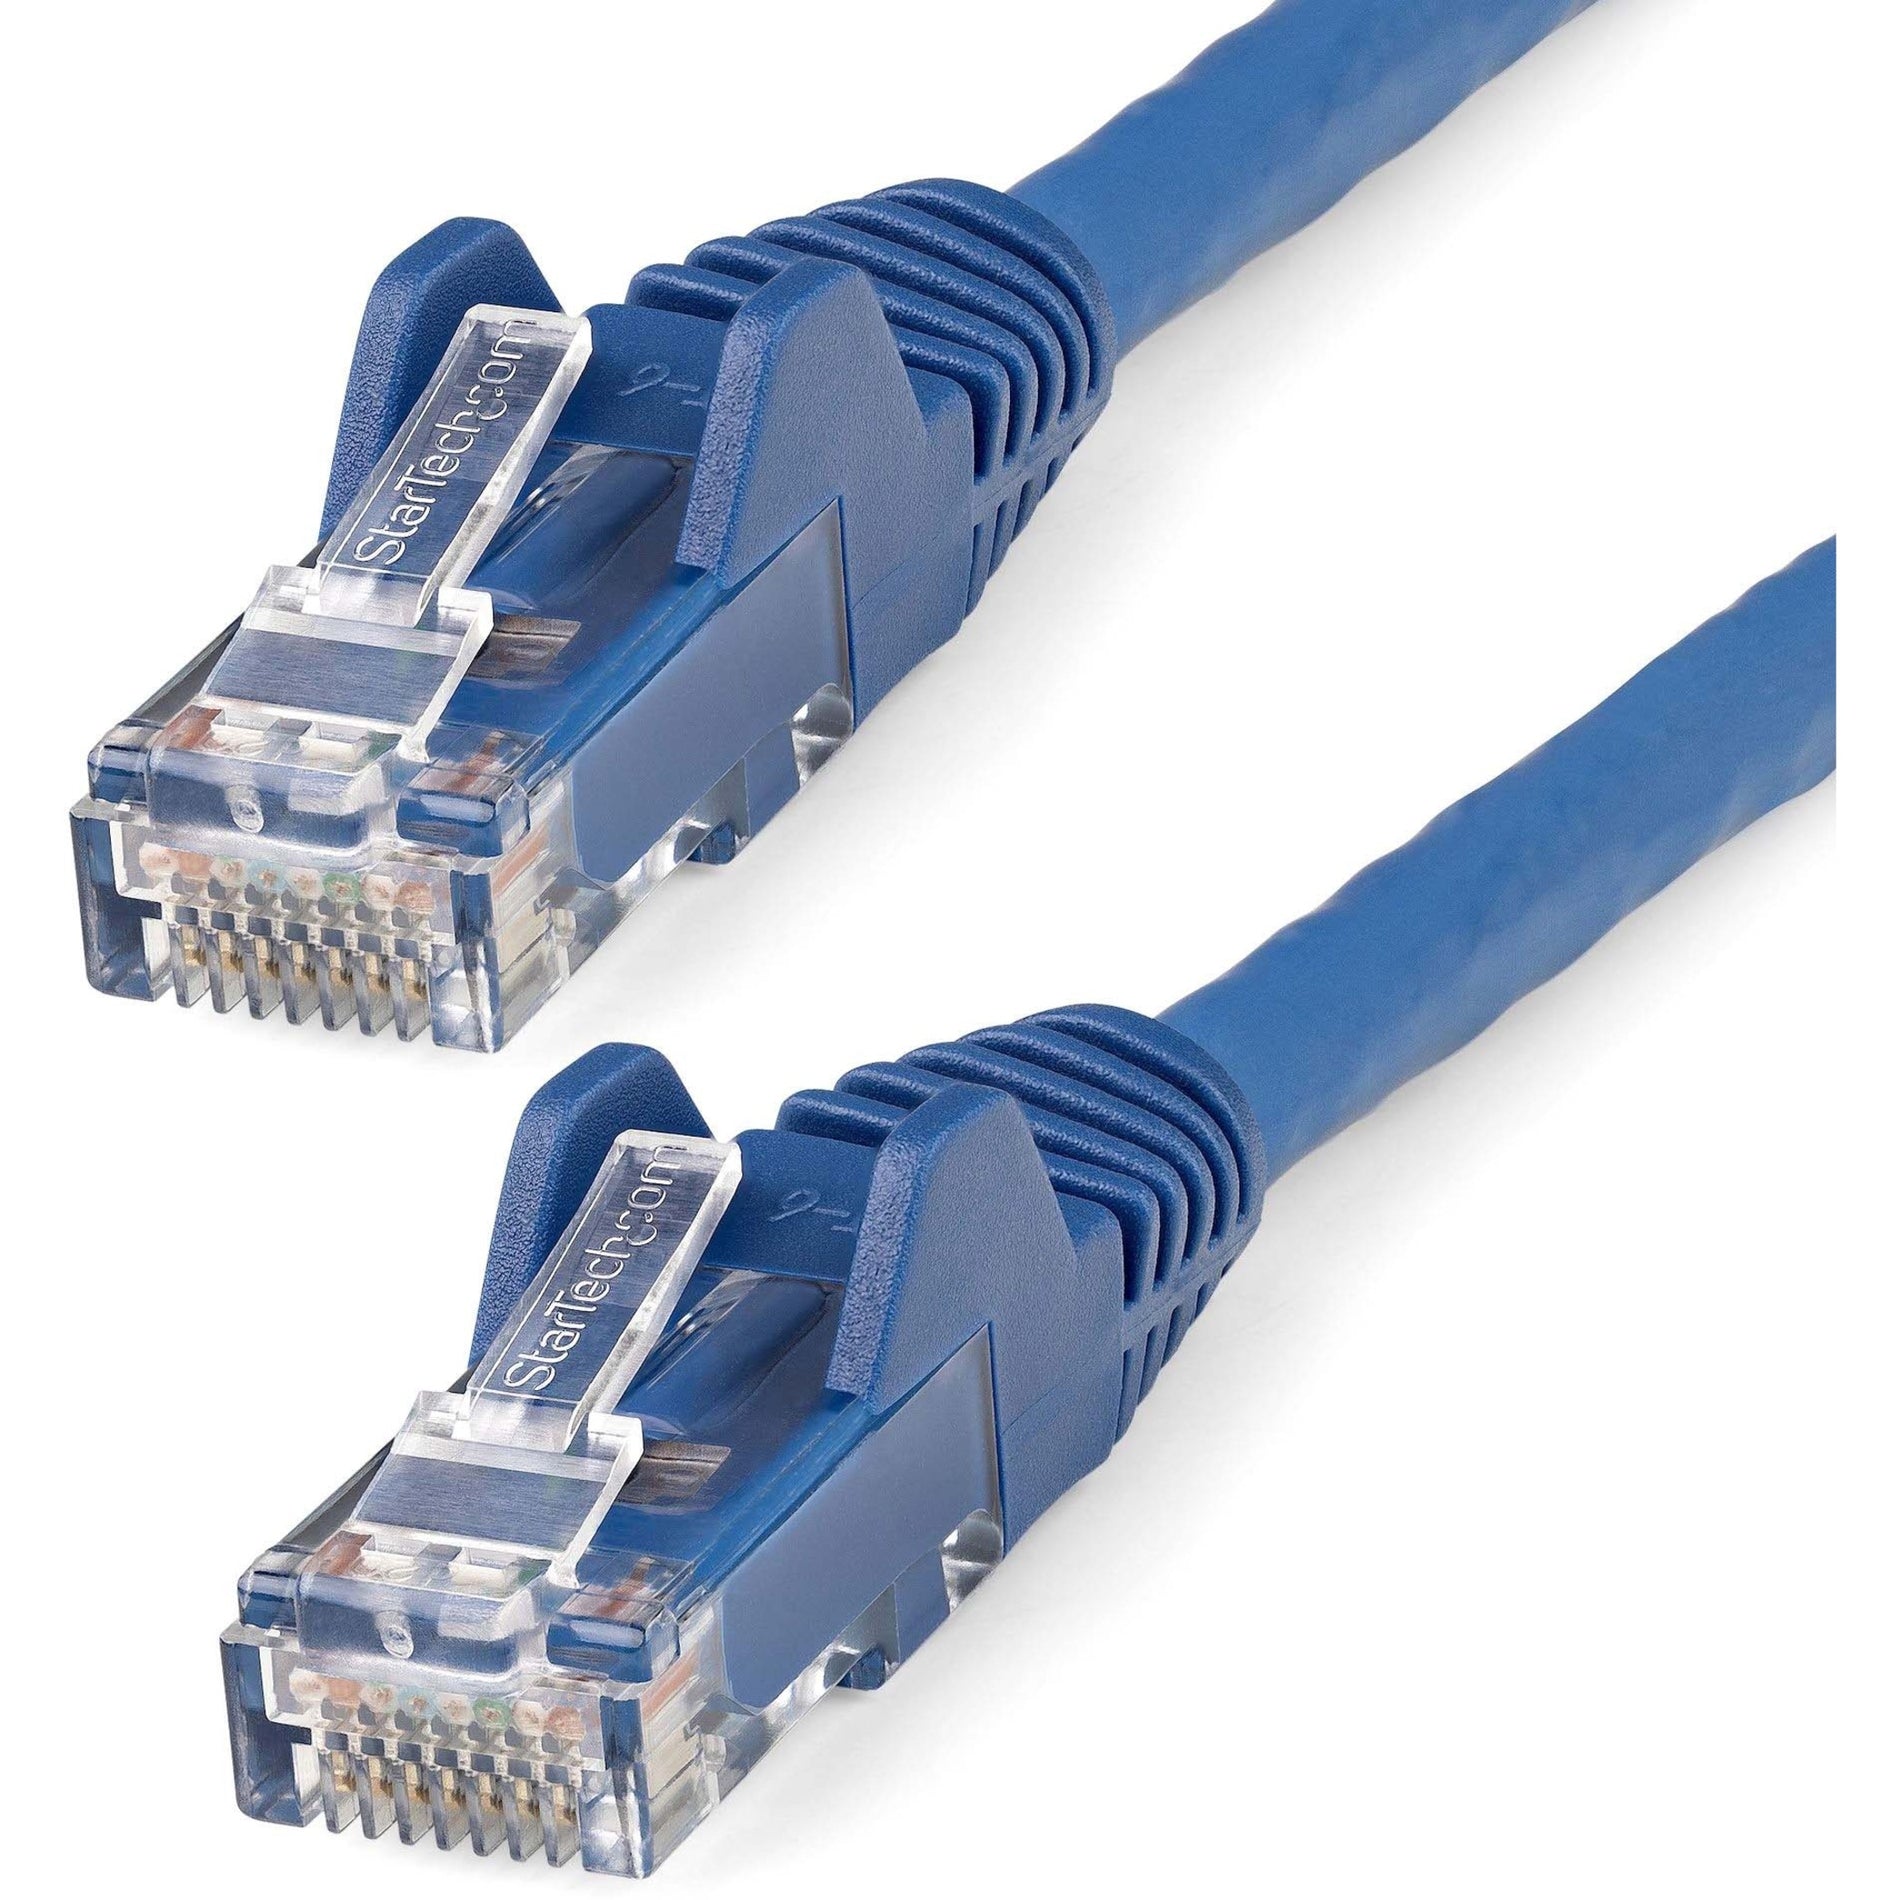 StarTech.com N6LPATCH3BL 3ft LSZH CAT6 Ethernet Cable - Blue, Flexible, PoE, 10 Gbit/s, Lifetime Warranty